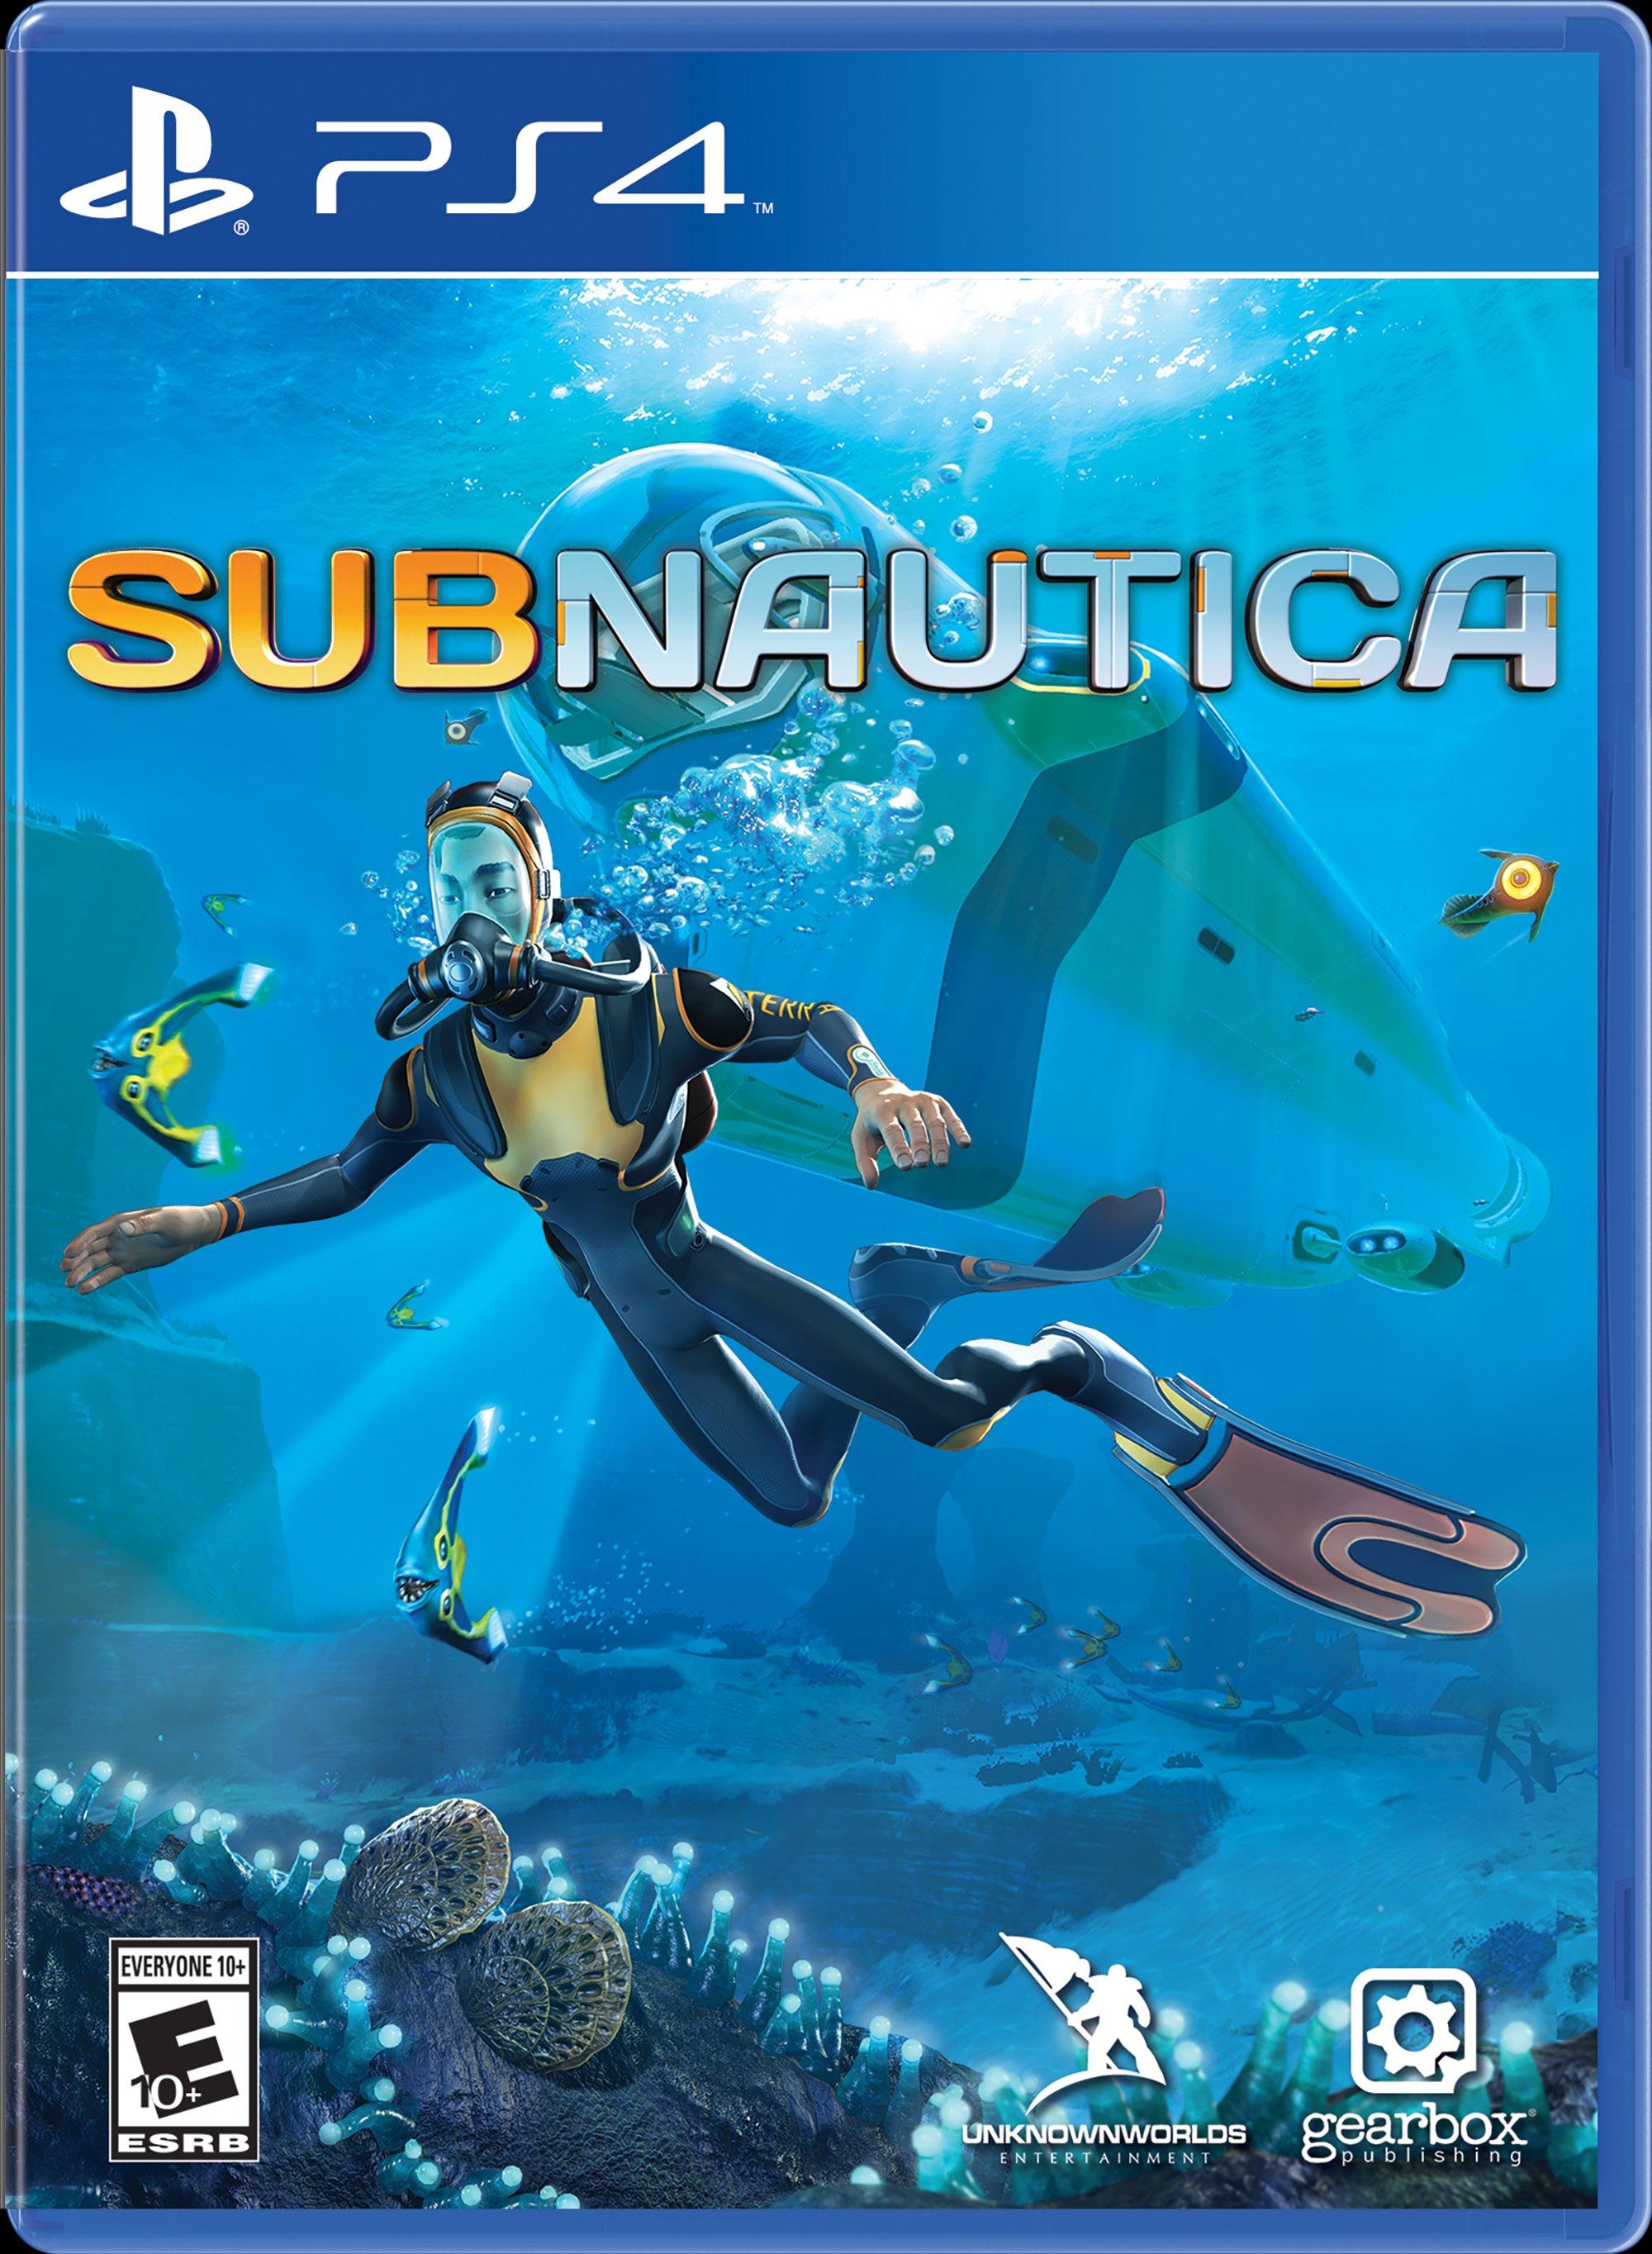 Subnautica - PlayStation 4